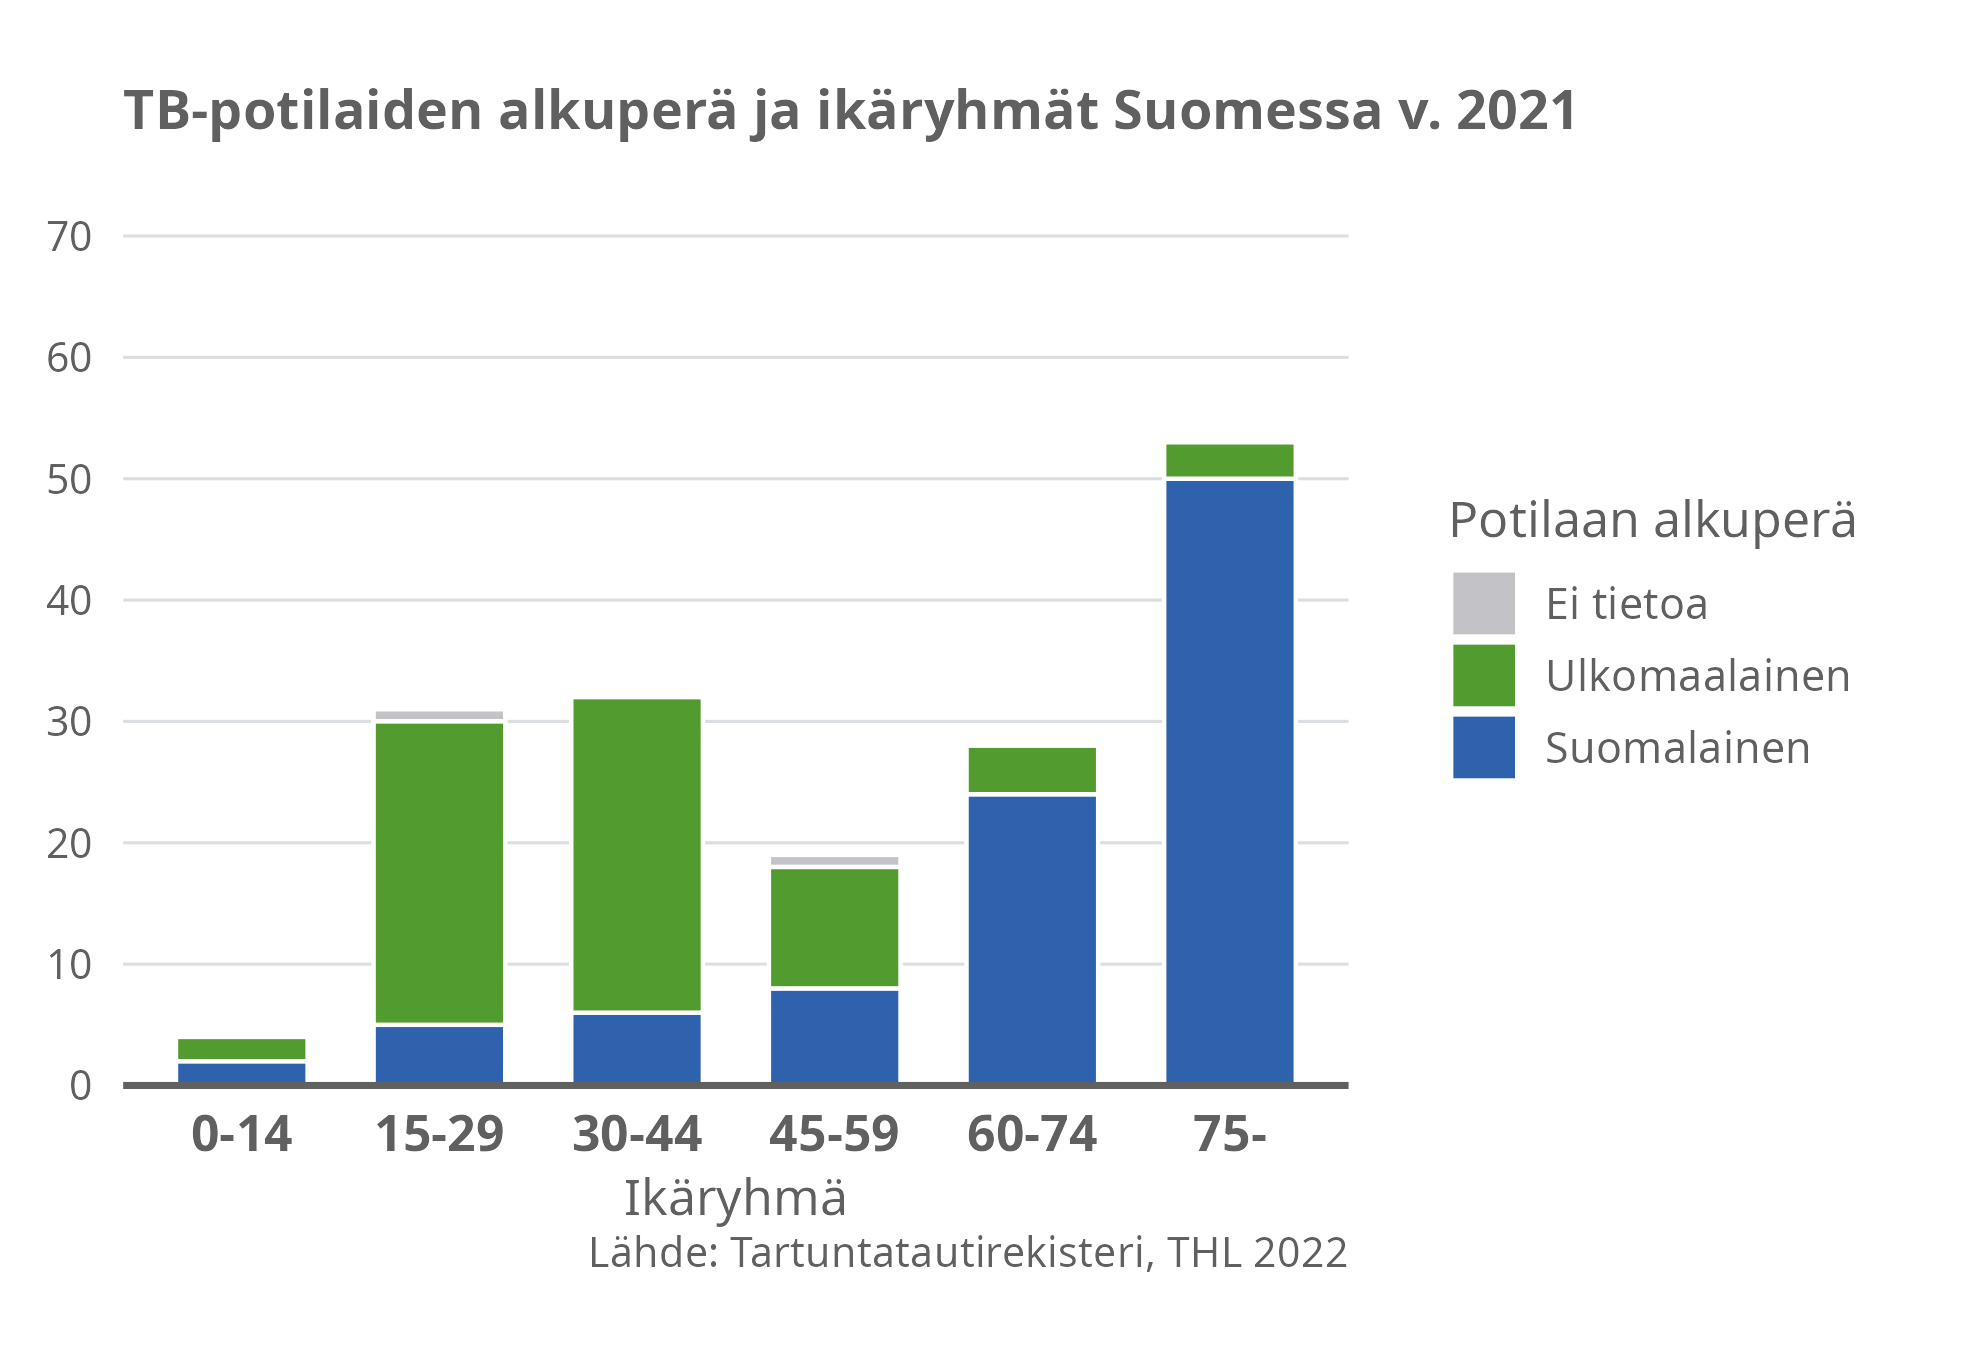 TB-potilaiden alkuperä ja ikäryhmät suomessa v. 2021.